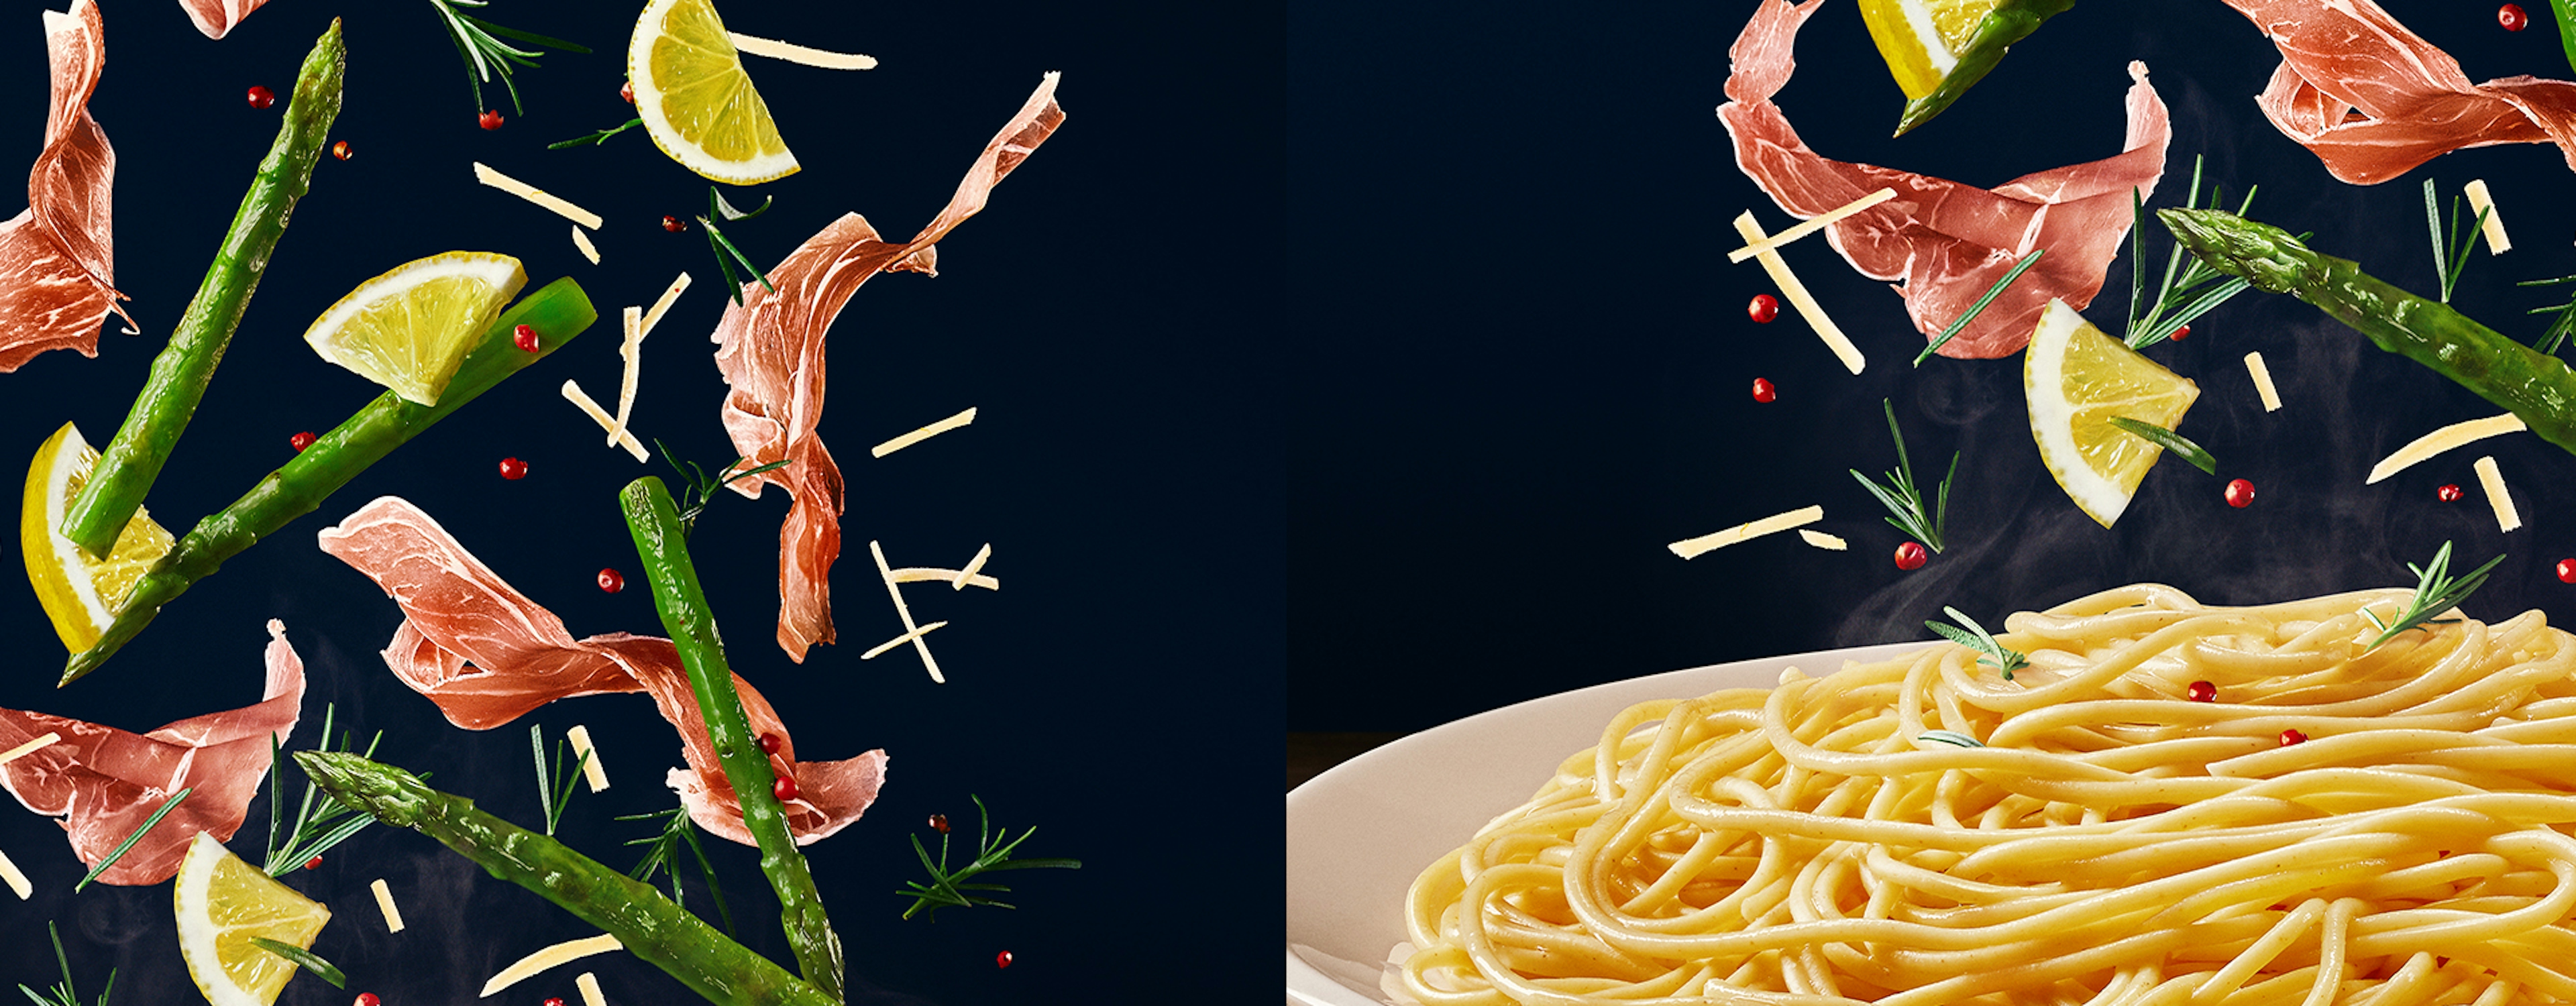 Primeira foto: aspargos, limão e presunto parma. Segunda foto: macarrão espaguete